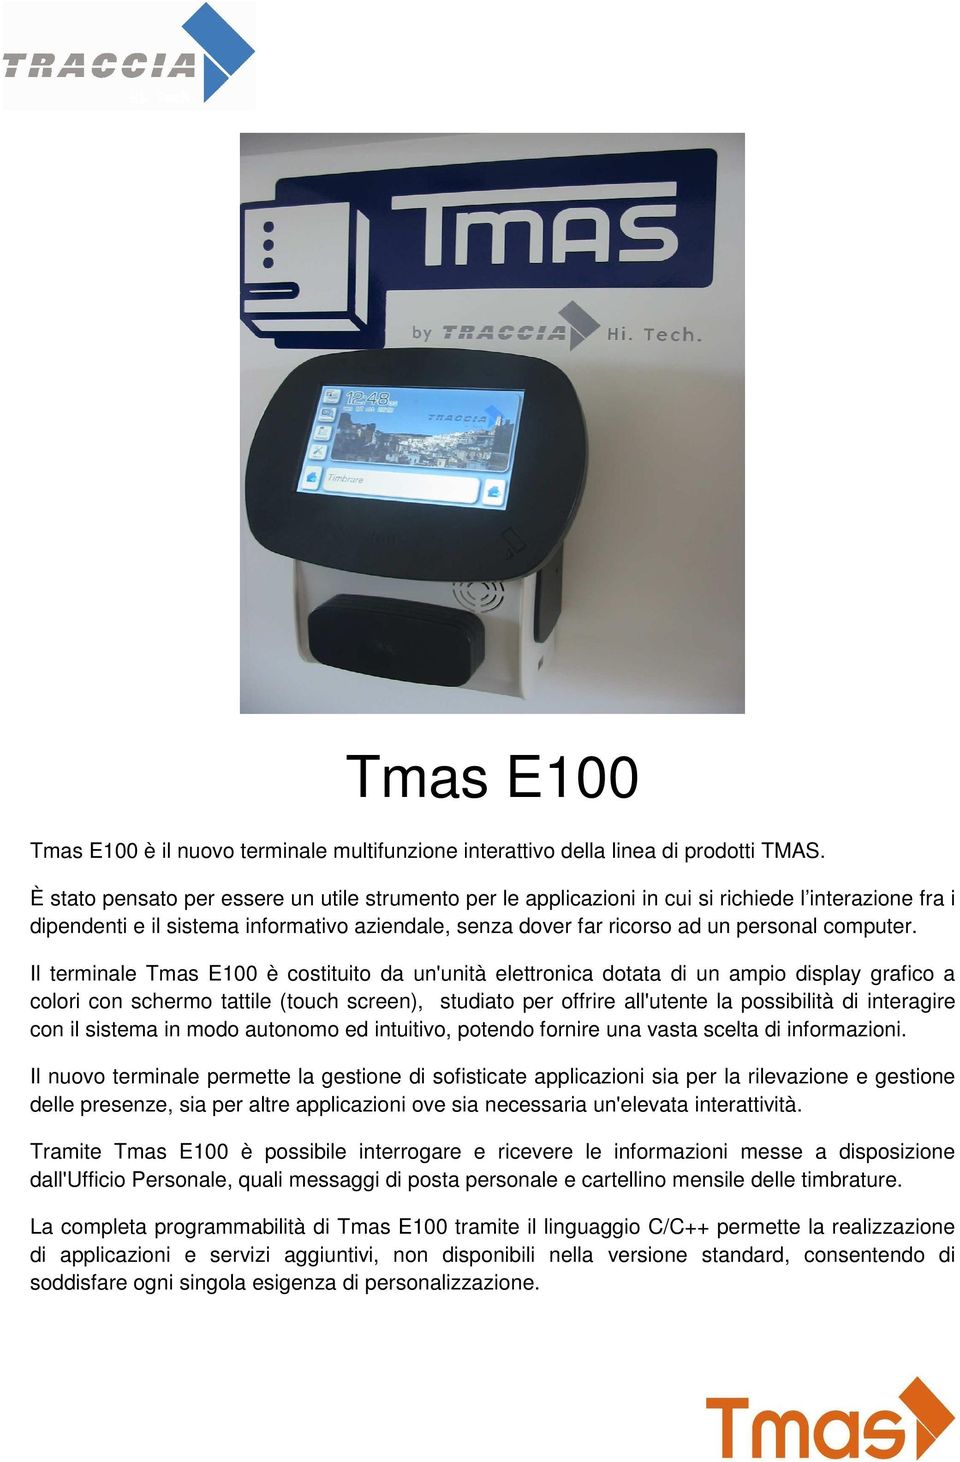 Il terminale Tmas E100 è costituito da un'unità elettronica dotata di un ampio display grafico a colori con schermo tattile (touch screen), studiato per offrire all'utente la possibilità di